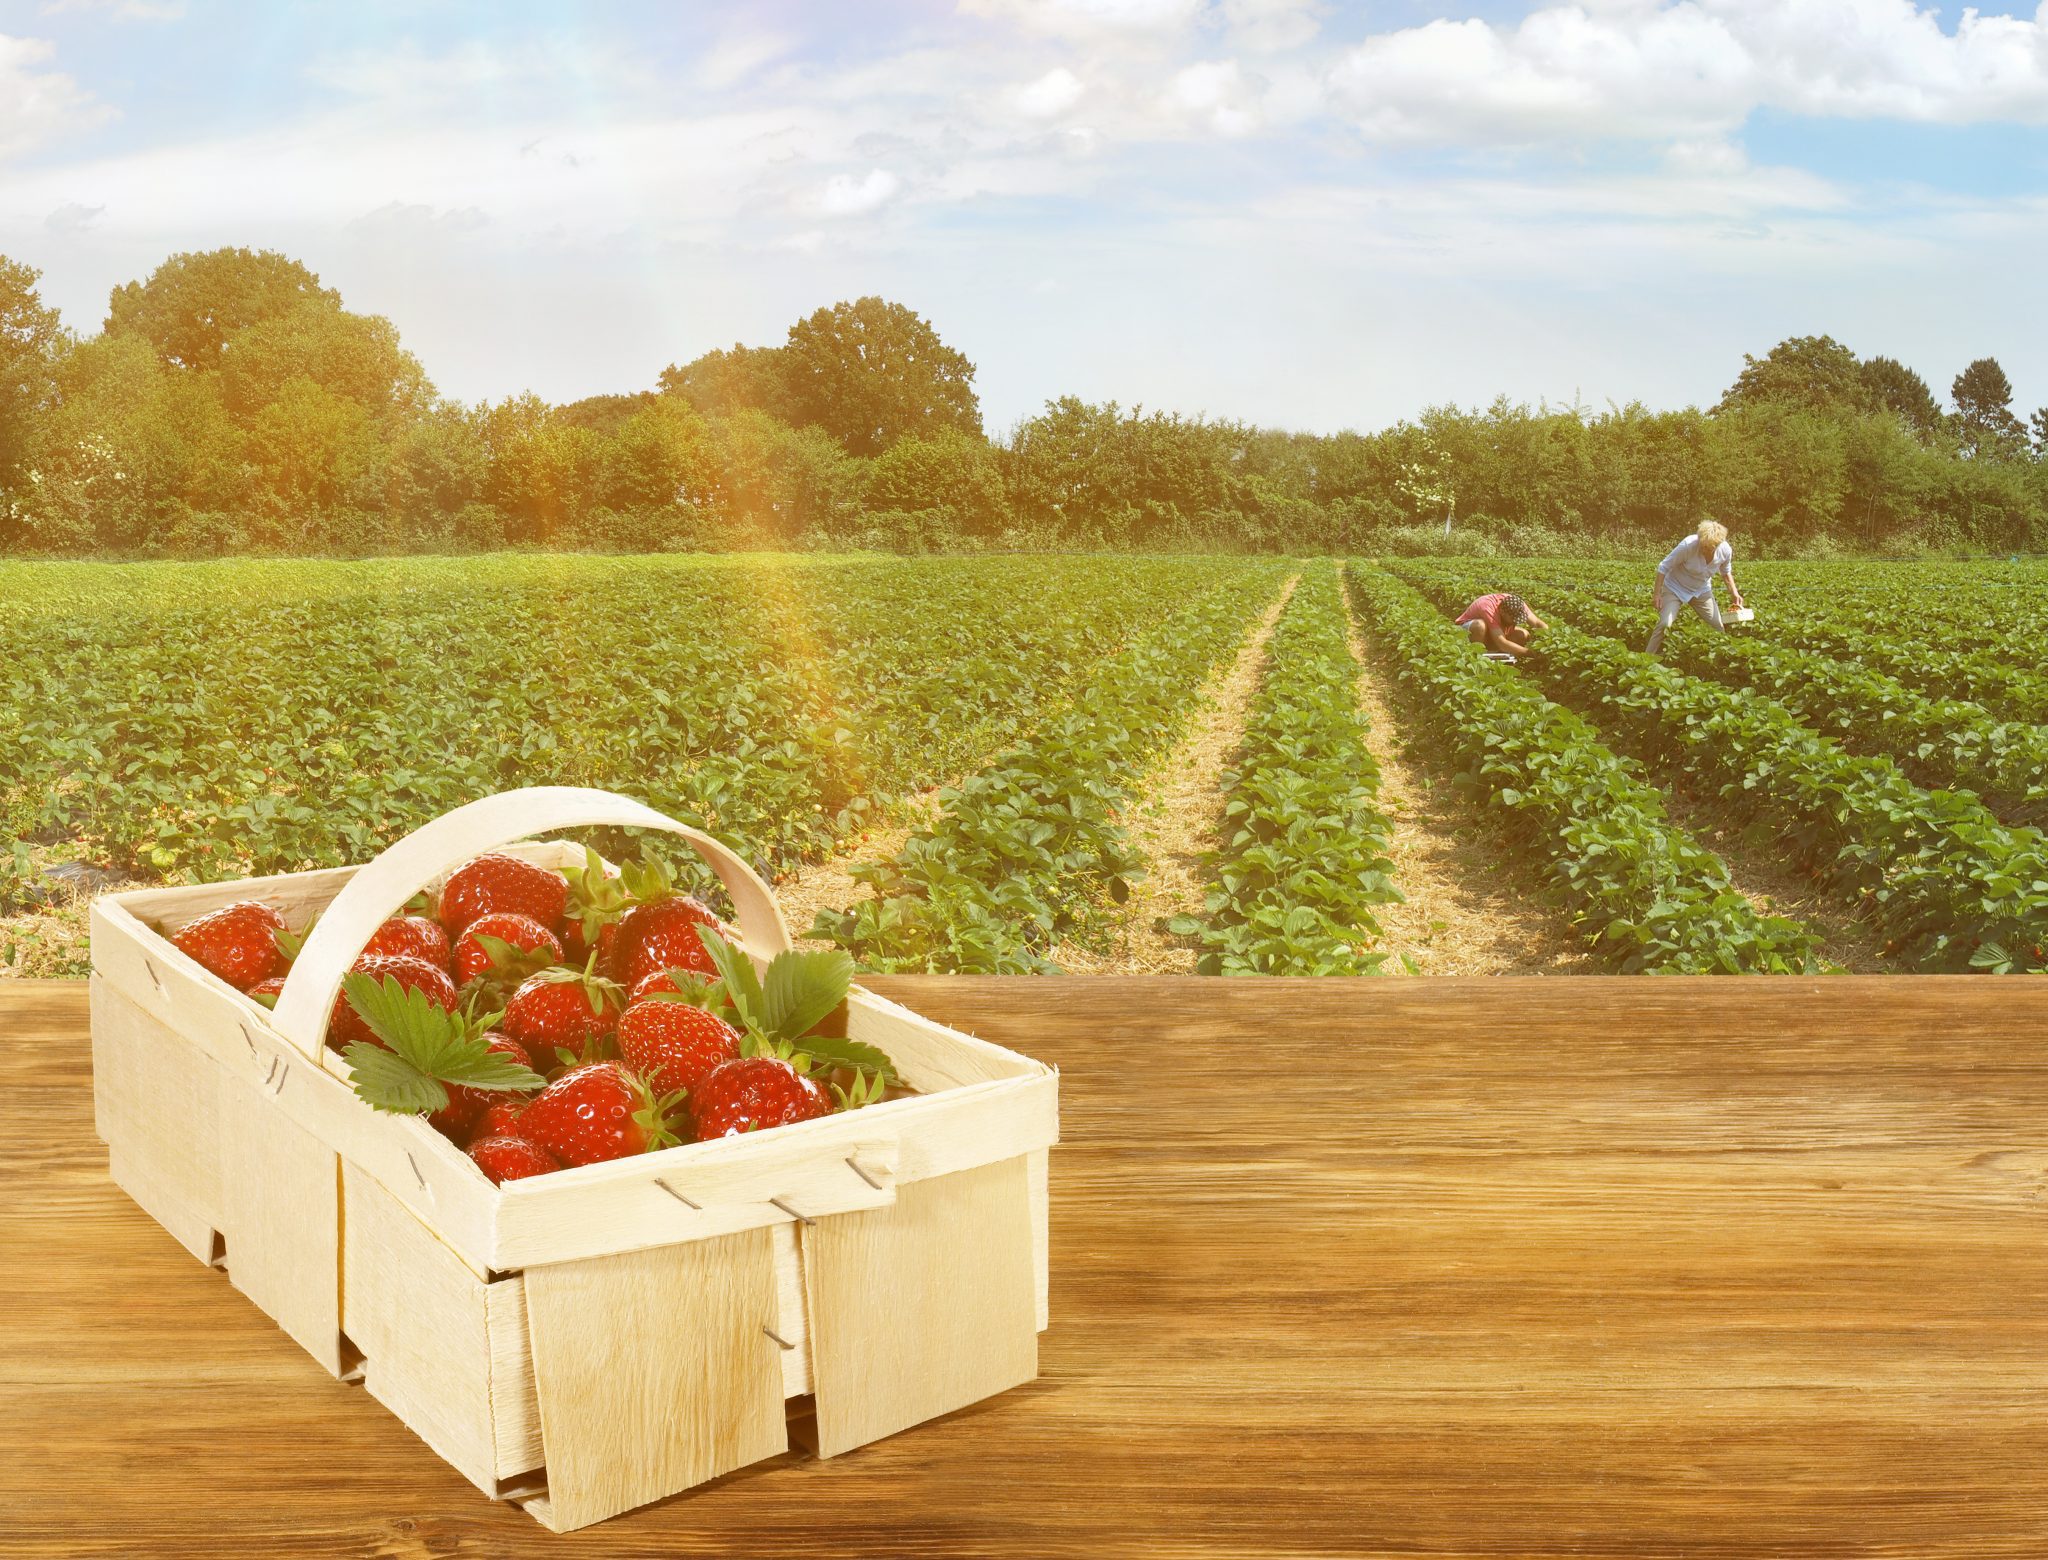 Erdbeerfelder sind ab sofort für Selbstpflücker geöffnet!